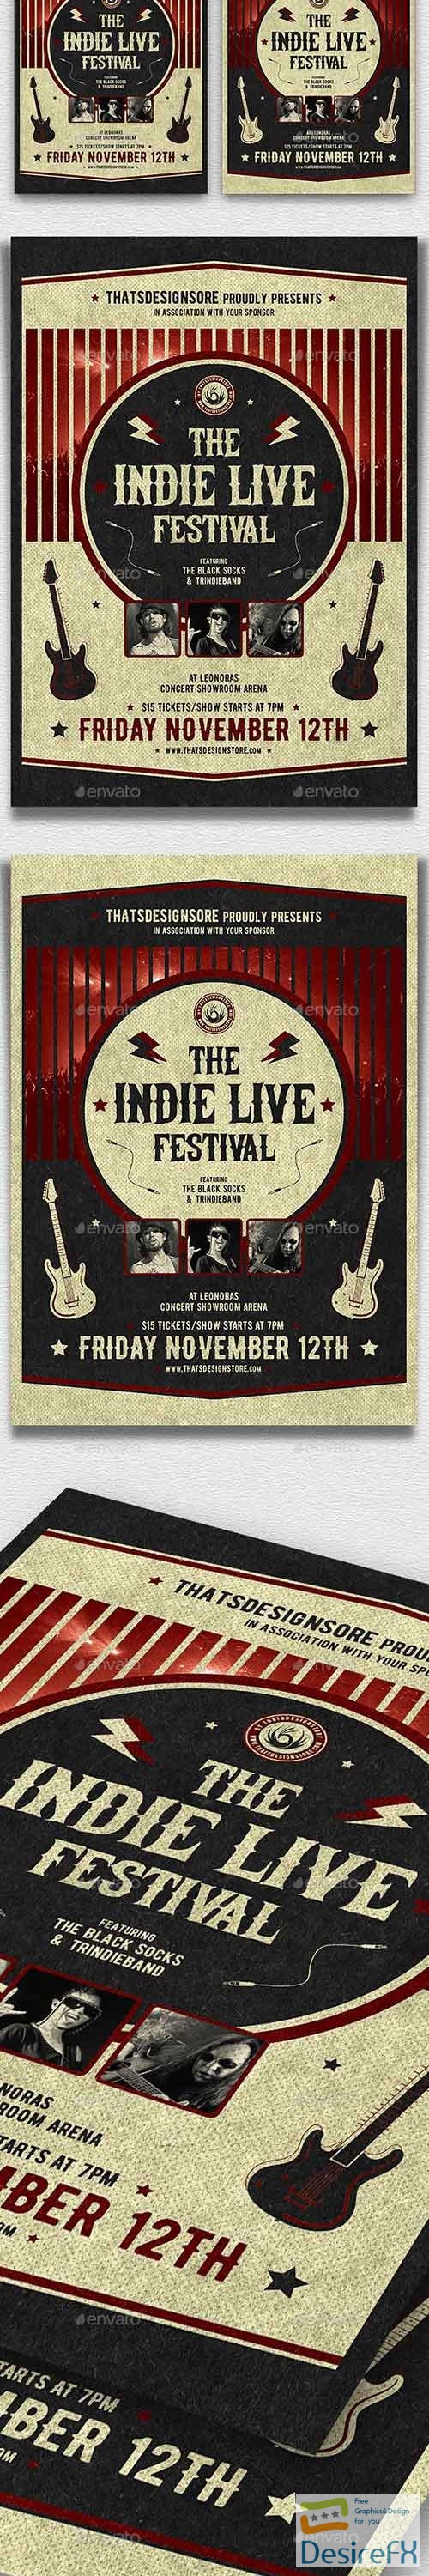 Indie Live Festival Flyer Template V2 21450189